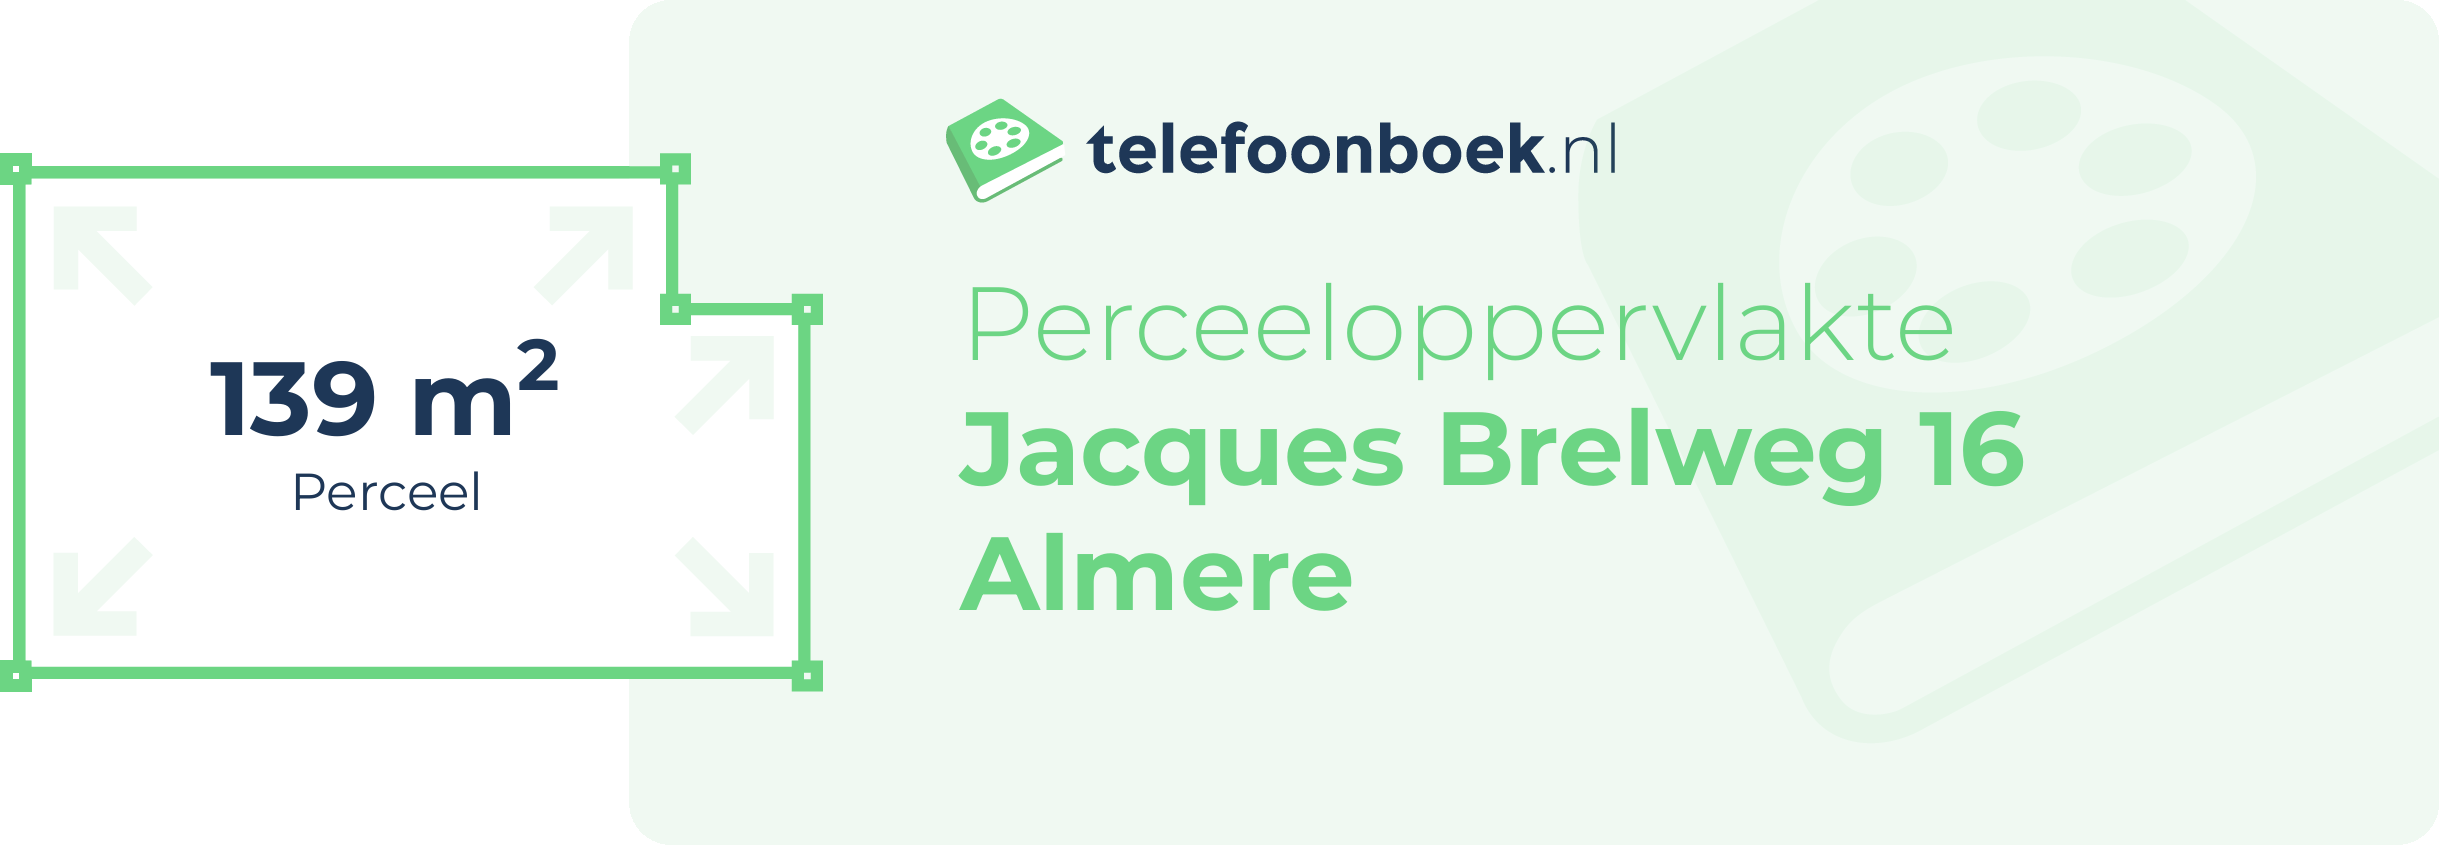 Perceeloppervlakte Jacques Brelweg 16 Almere